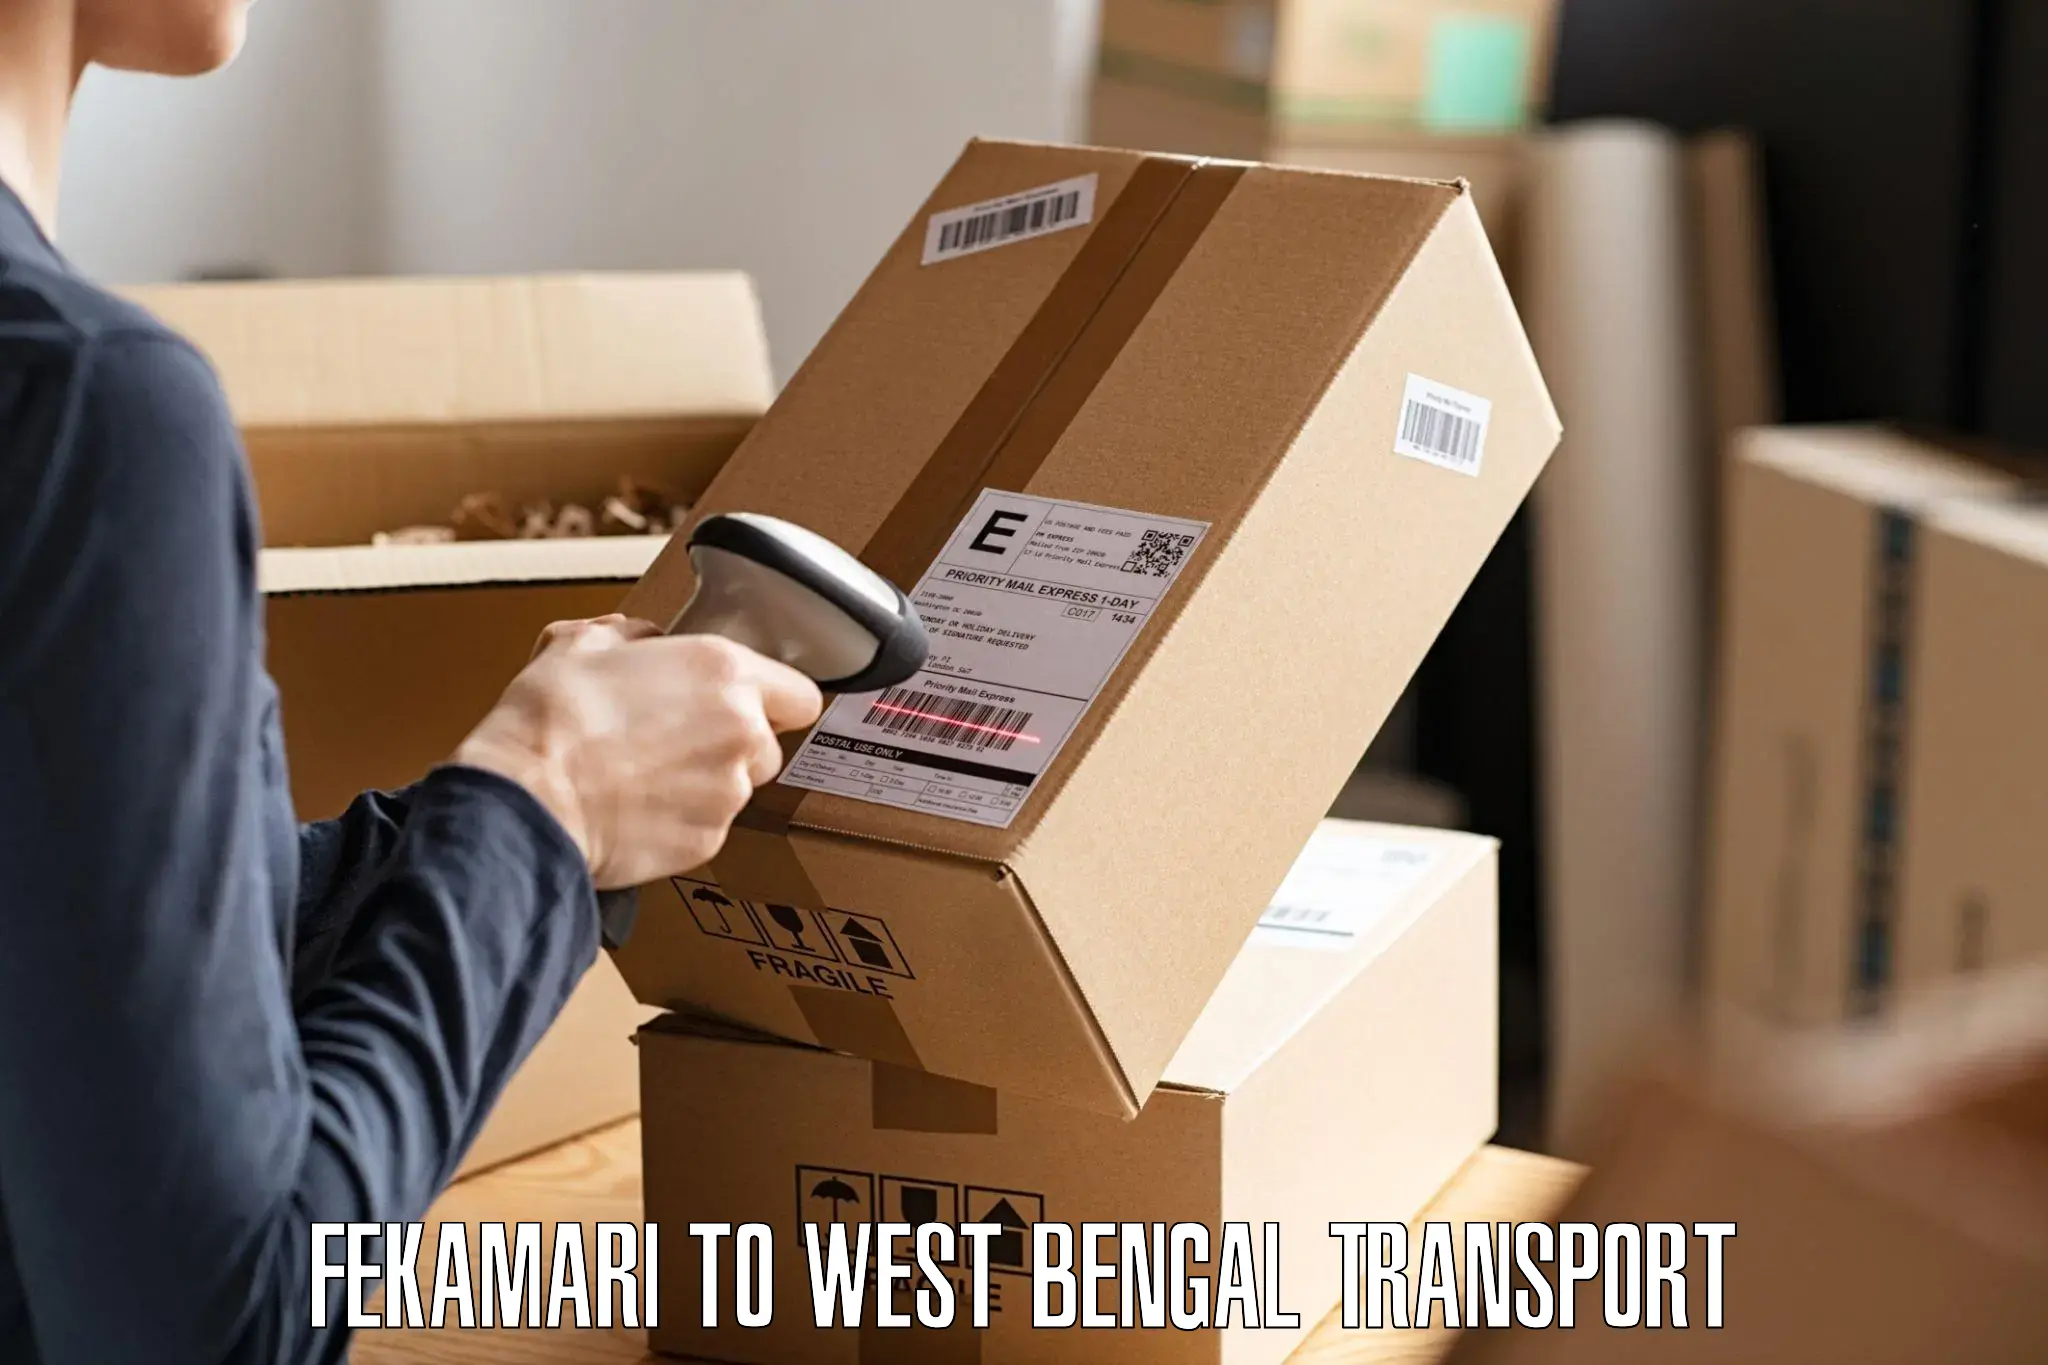 Furniture transport service Fekamari to Asansol